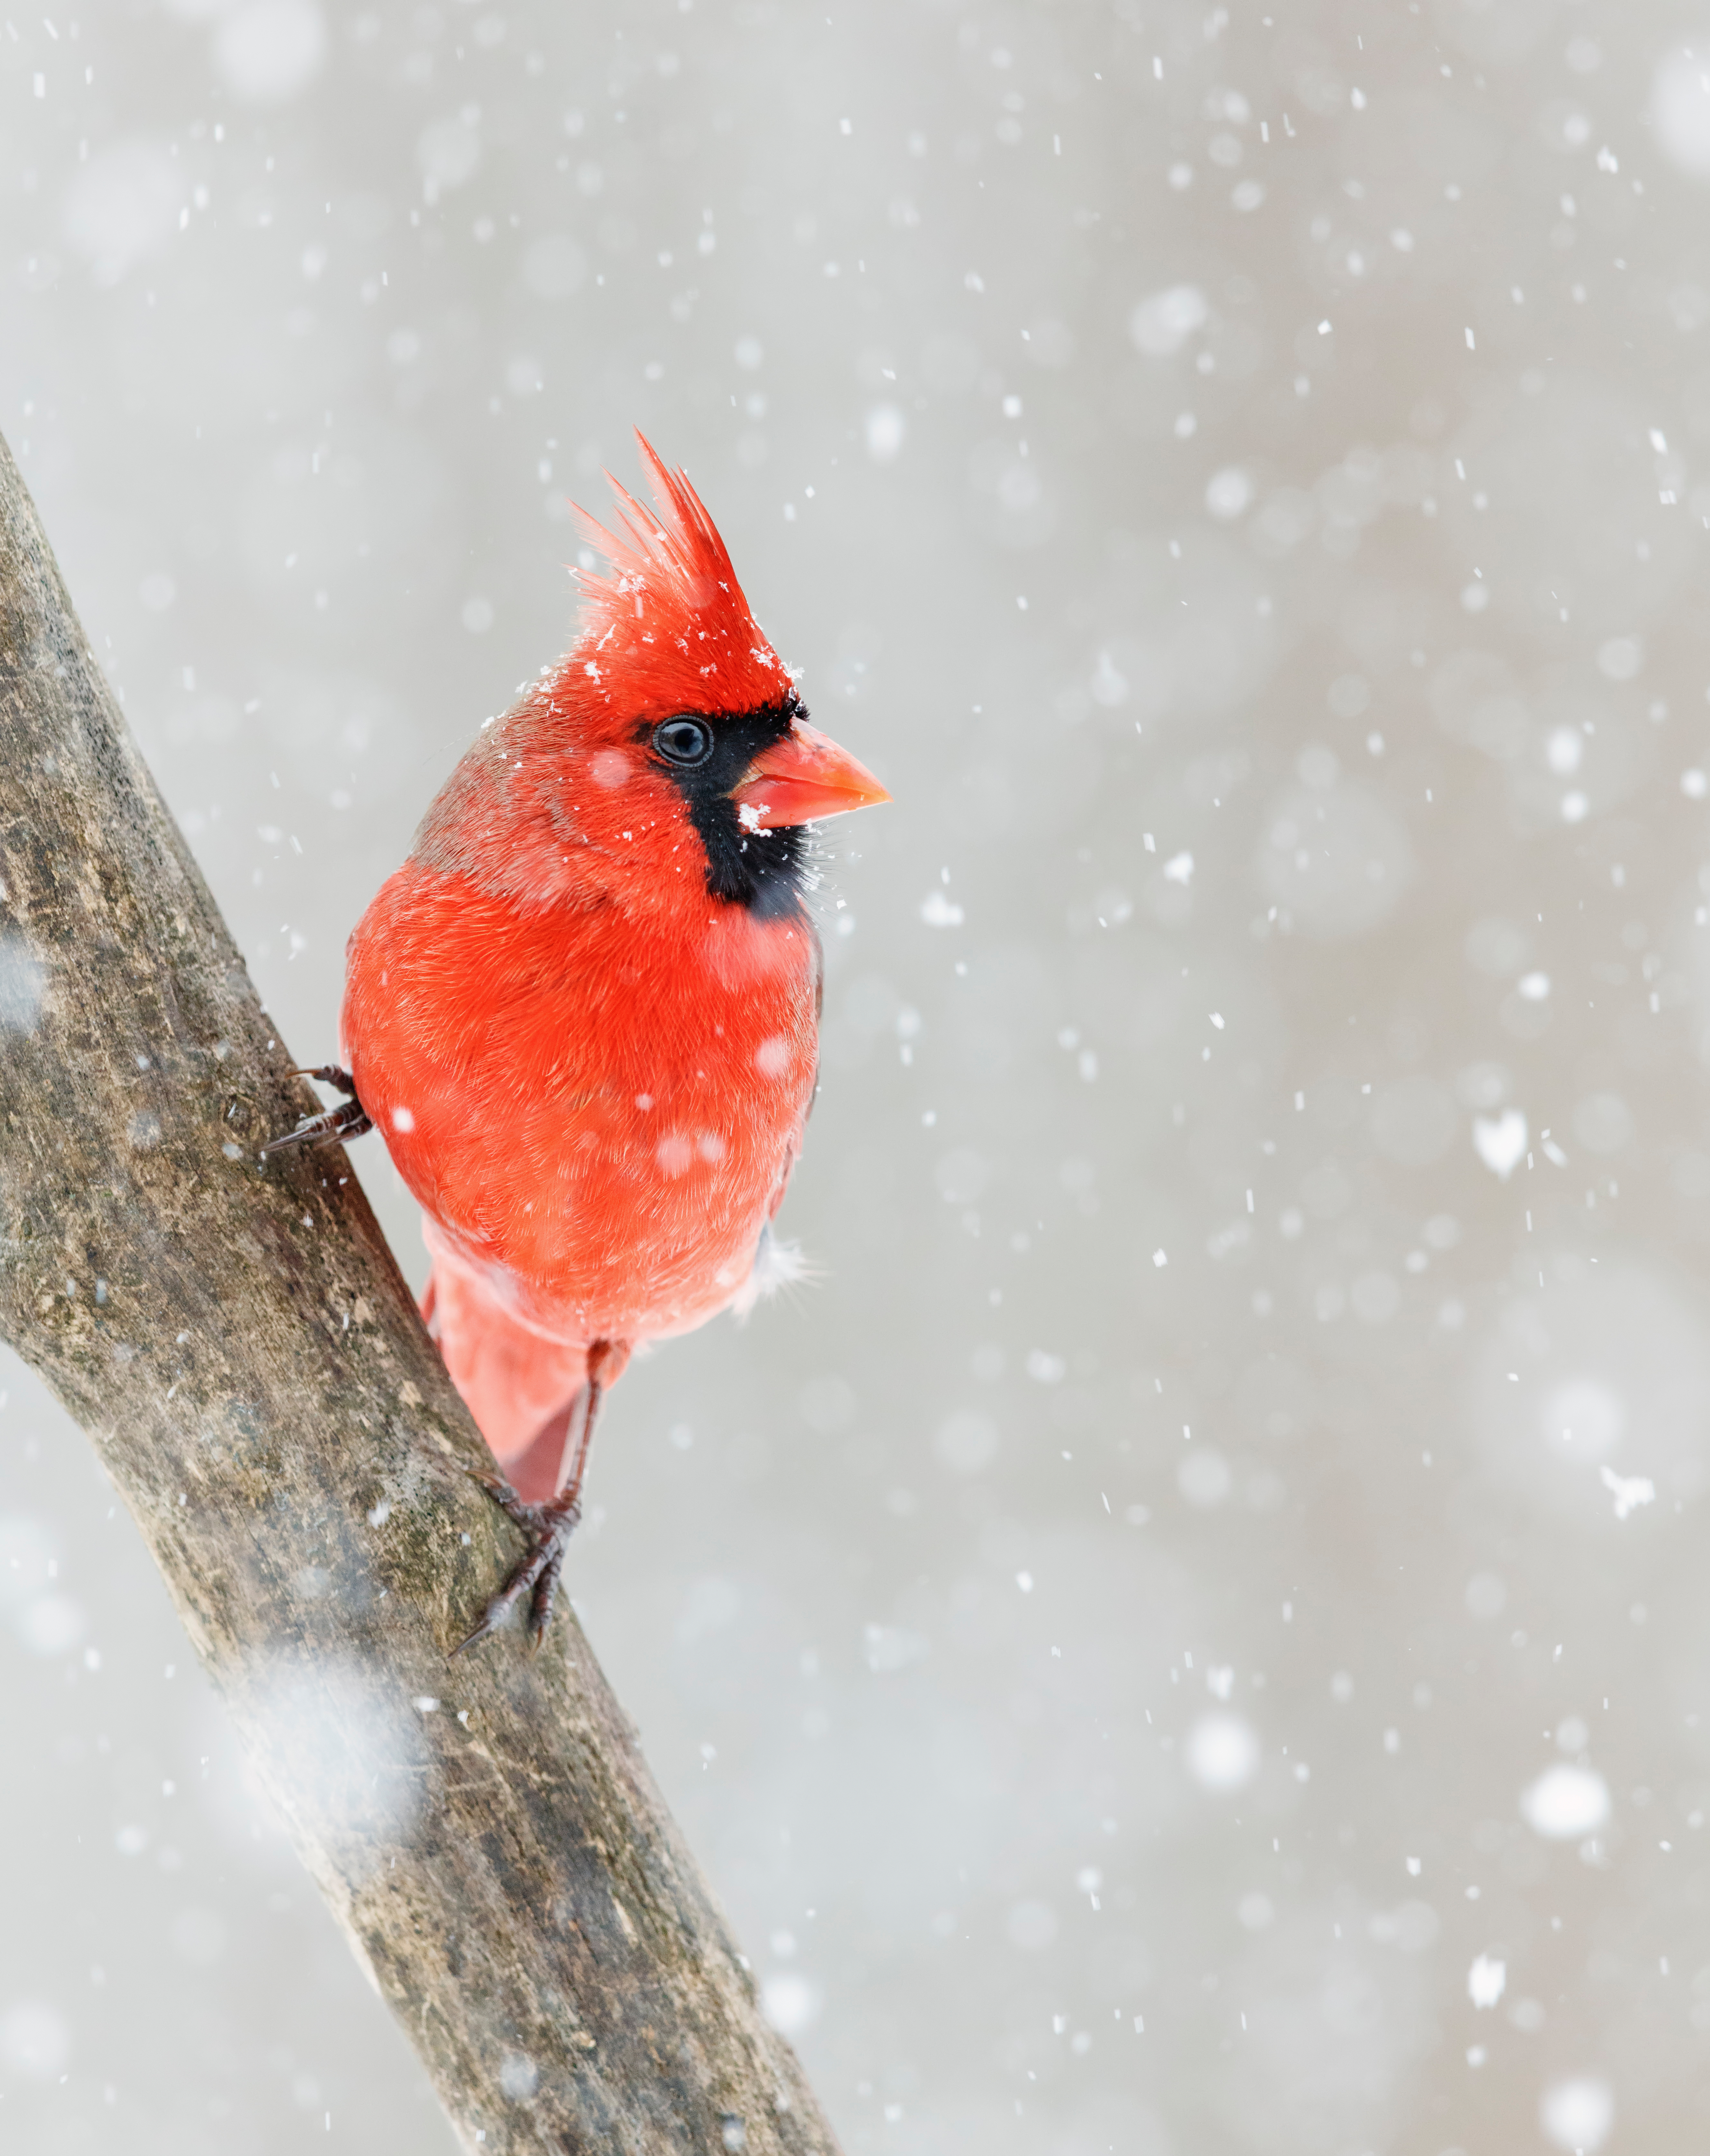 110684 descargar imagen animales, nieve, rojo, pájaro, cardenal rojo: fondos de pantalla y protectores de pantalla gratis